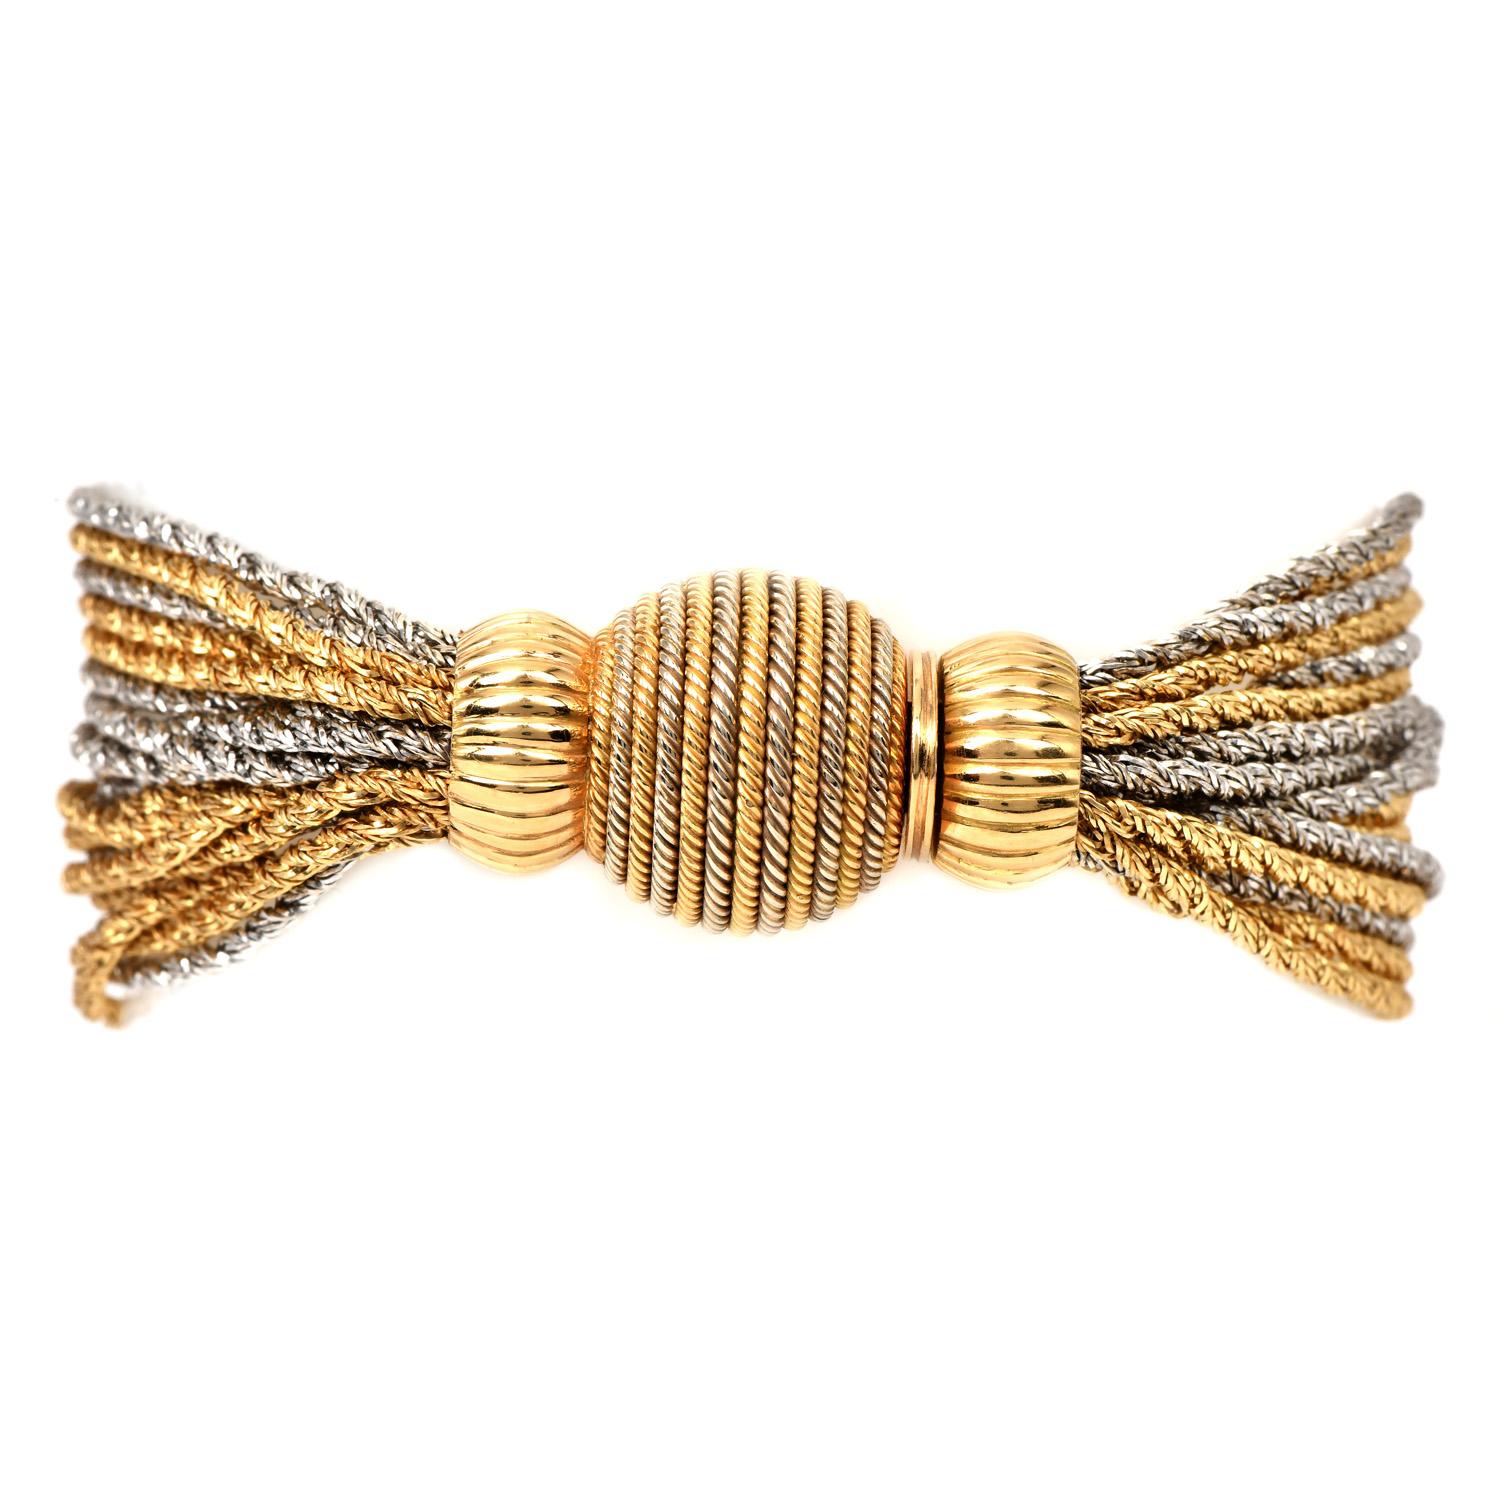 Vintage-Armband aus den späten 1970er Jahren mit mehreren Strängen in hochglanzpolierter Goldausführung. 

Das aus massivem 18K Gelb- und Weißgold gefertigte Gliederarmband ist fein gearbeitet und mit einem Verschluss mit Perlenmuster versehen.

Das